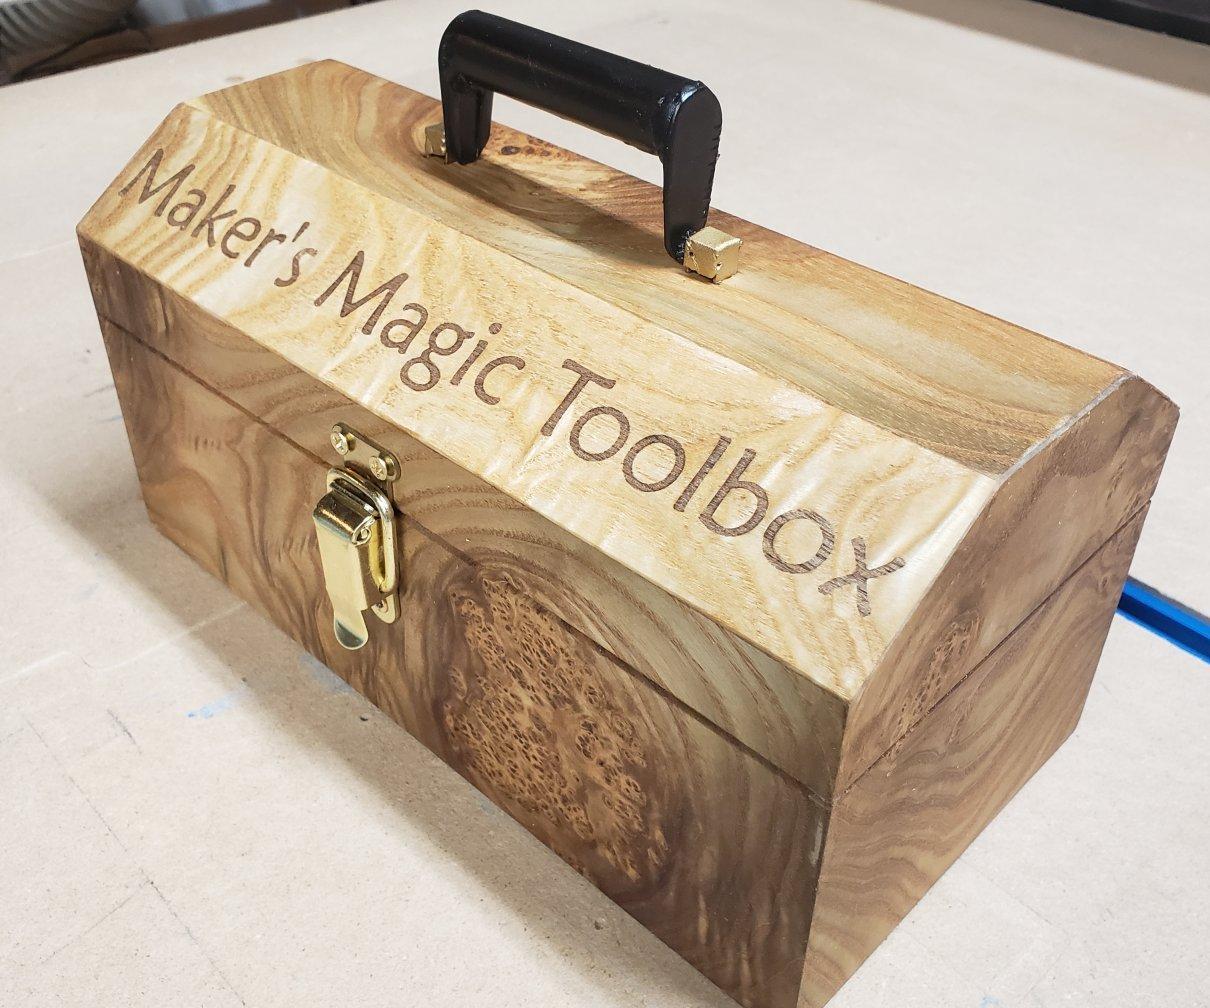 Maker's Magic Toolbox